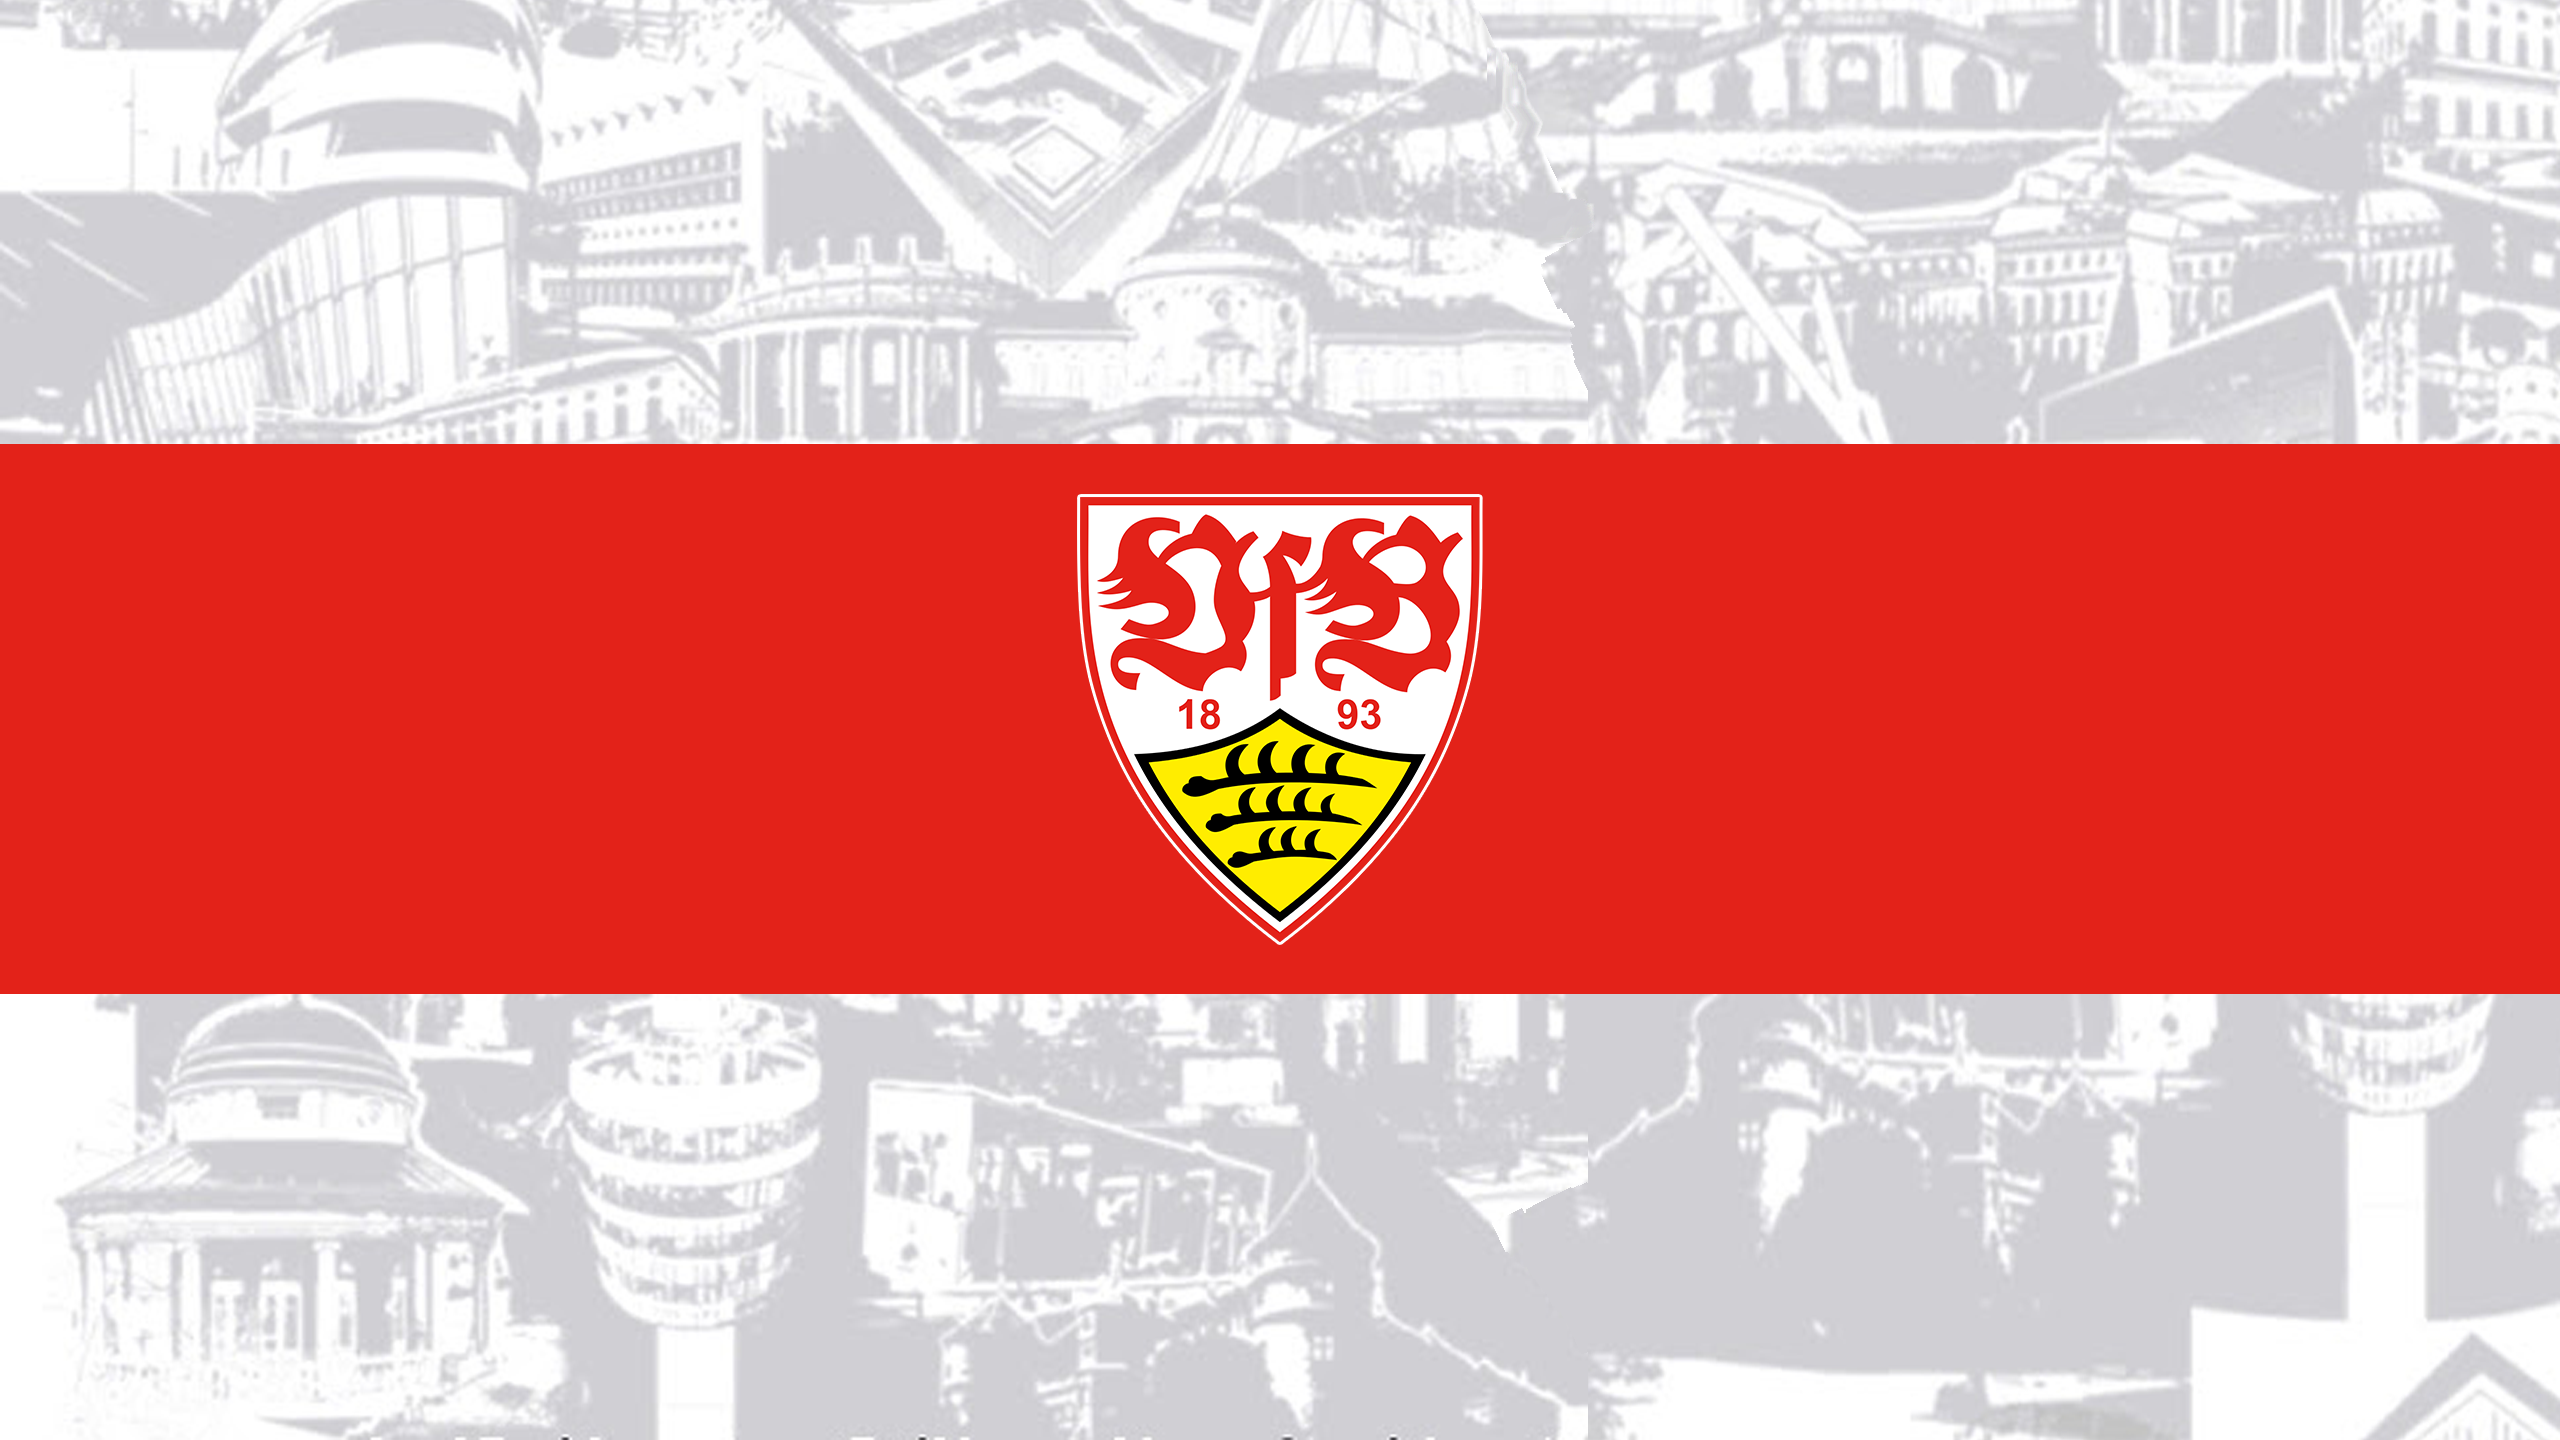 VfB Stuttgart - Bundesliga - Soccer - Square Bettor